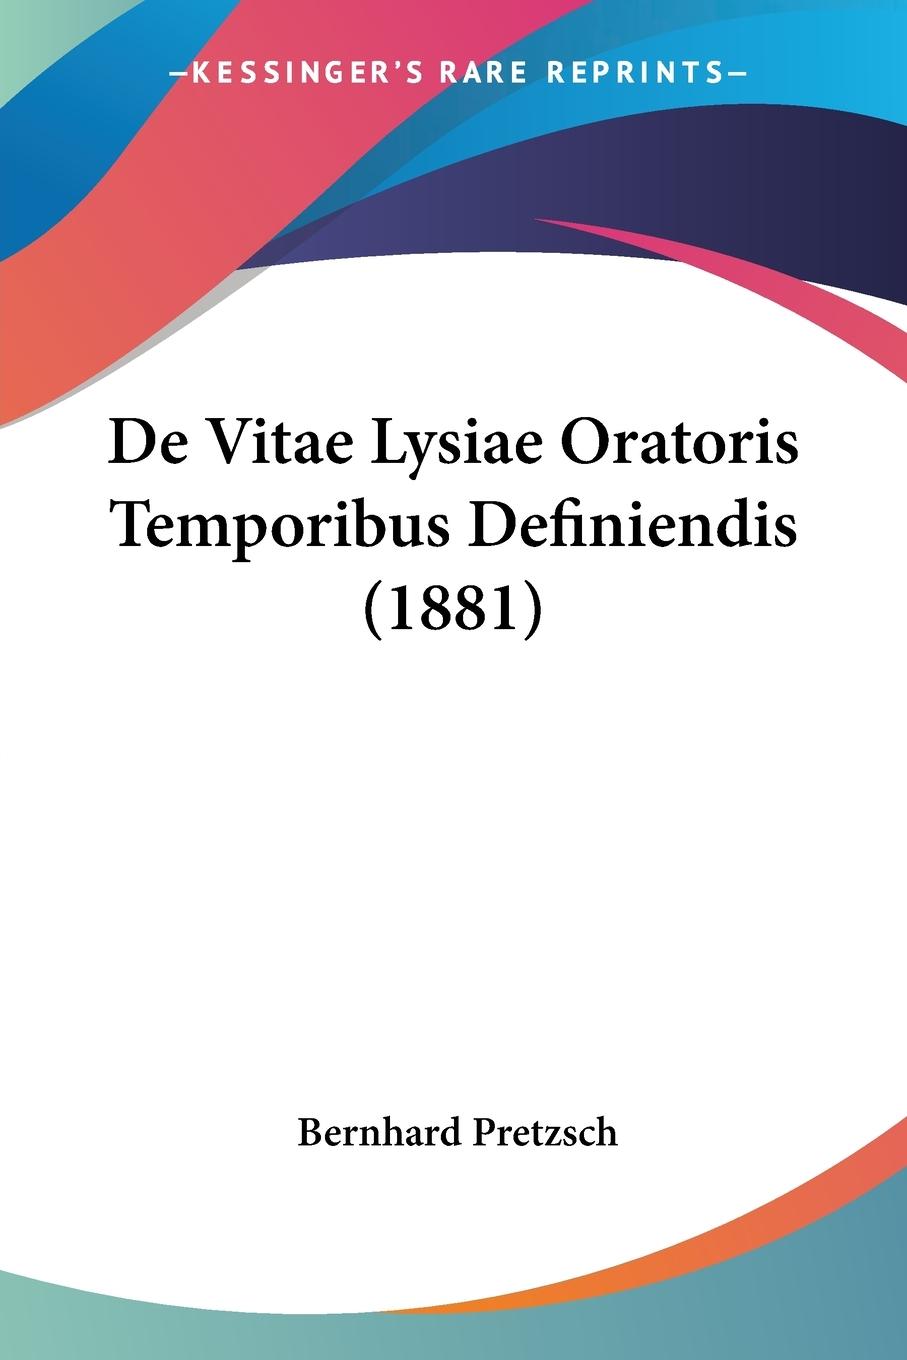 De Vitae Lysiae Oratoris Temporibus Definiendis (1881) - Pretzsch, Bernhard